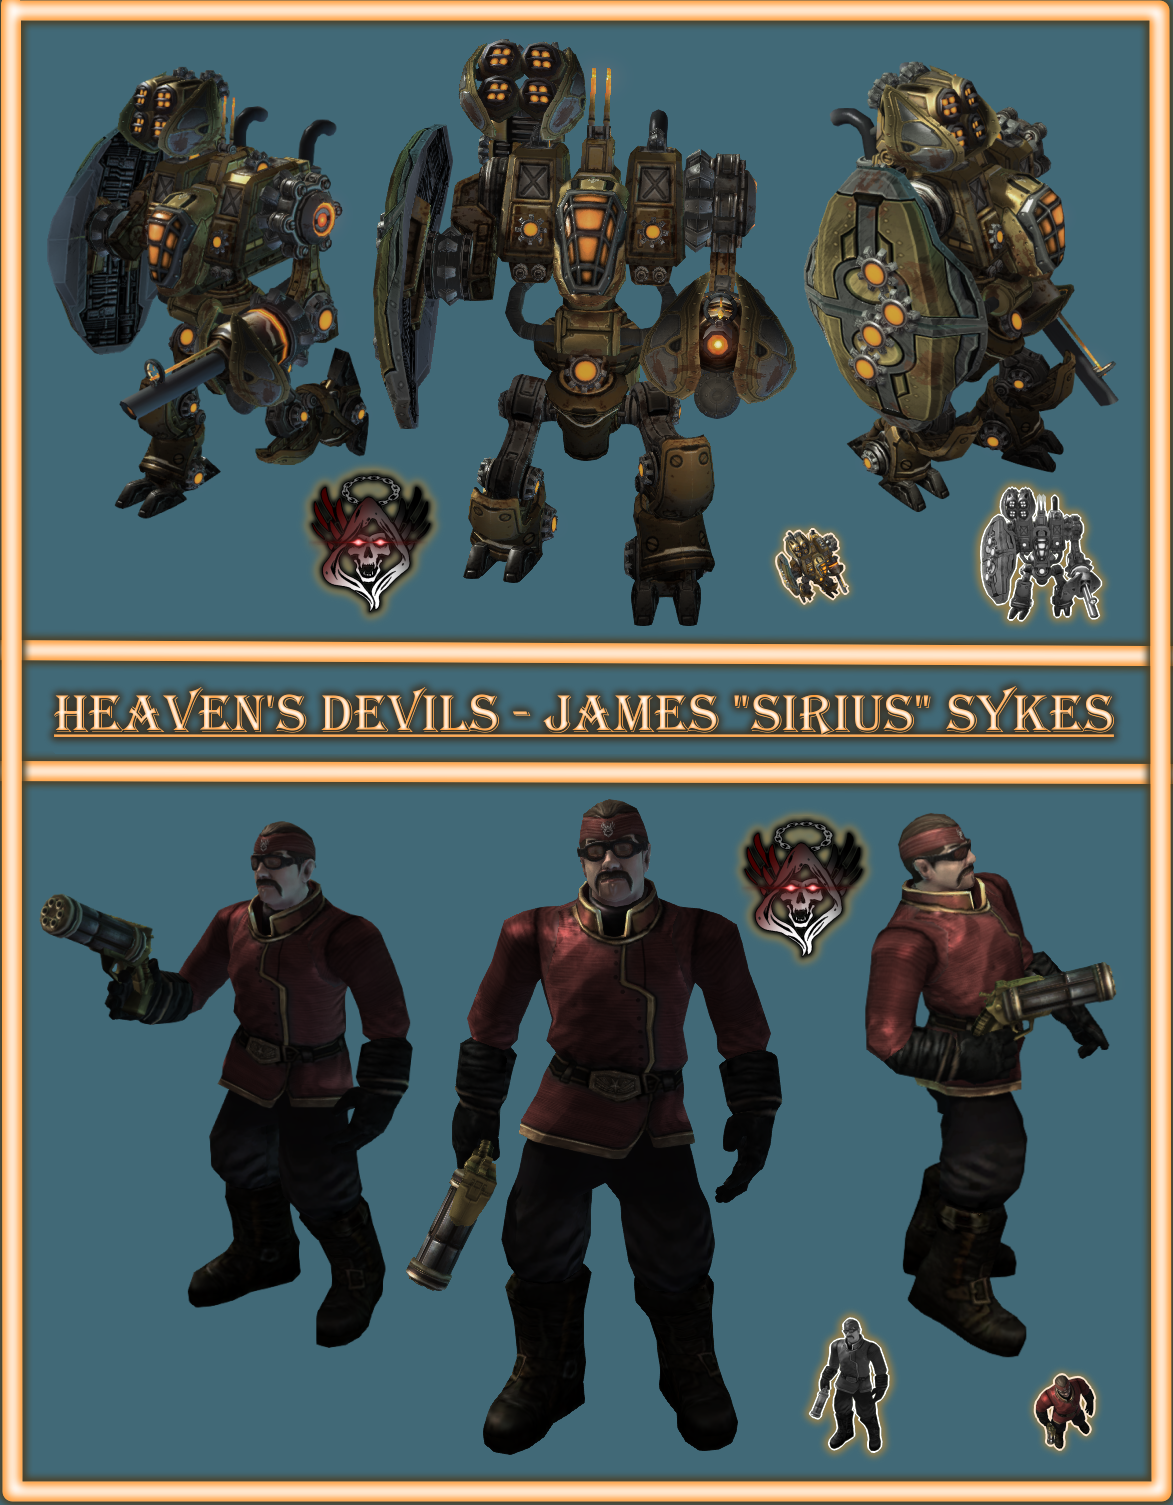 Heaven's Devils - James "Sirius" Sykes